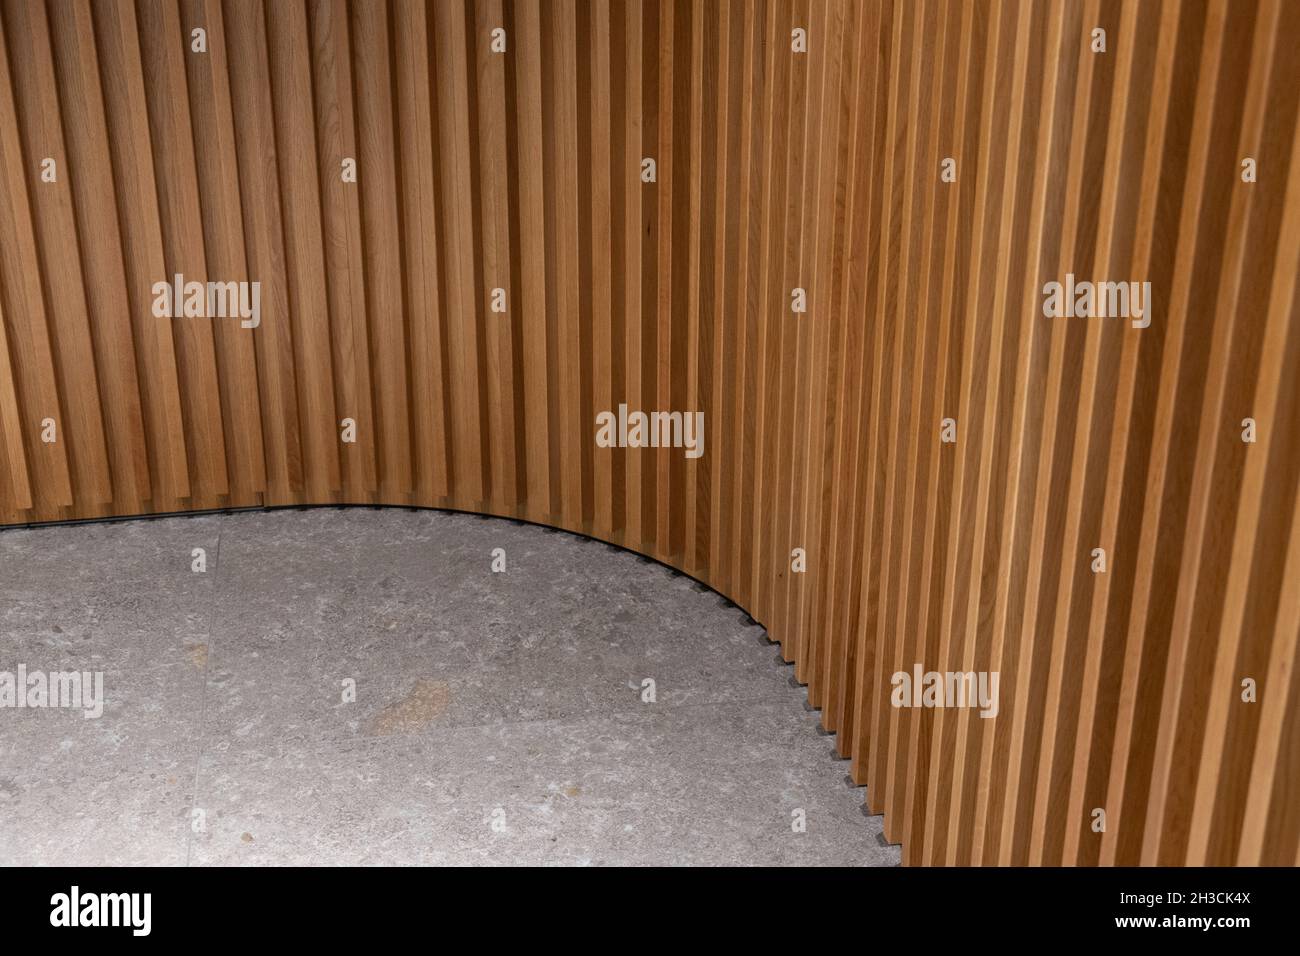 Combinación de pared de madera estriada curvilada y suelo de piedra. Panel texturizado de madera y baldosas de piedra gris. Detalle de diseño interior en esquina redonda. Foto de stock